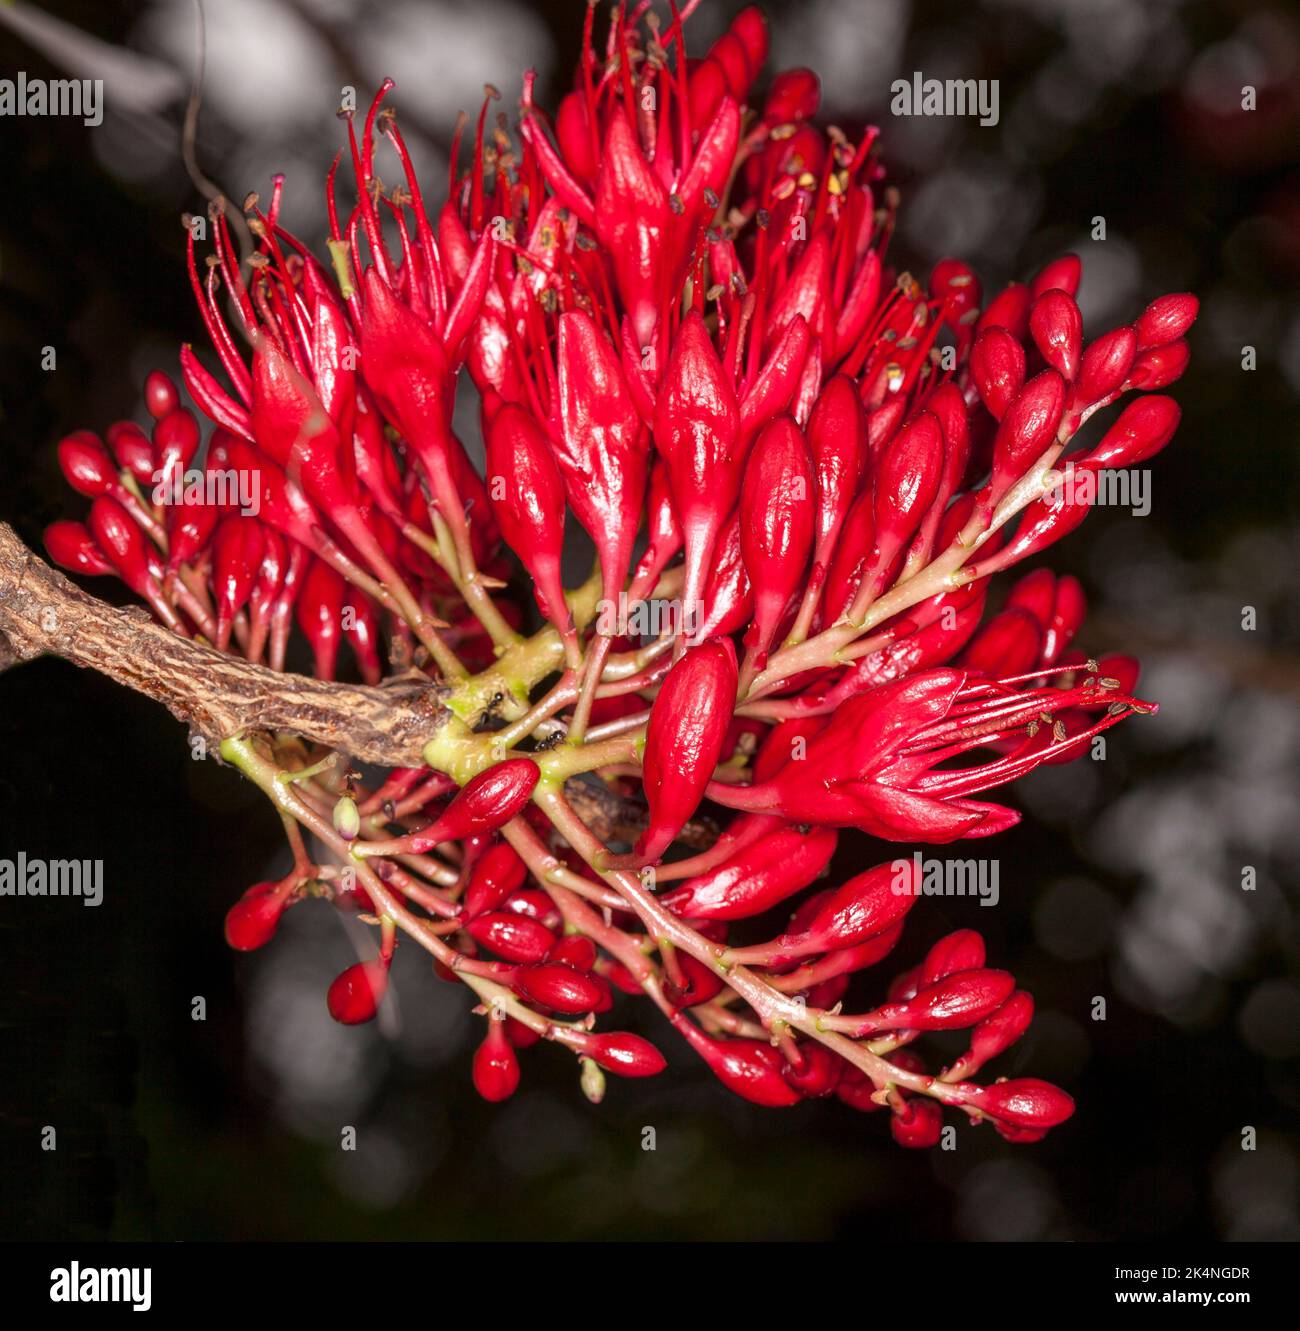 Groupe de fleurs rouges vives de Schotia brachypetala, arbre perroquet en contrebas / haricot de Weeping Boer, arbre africain en croissance en Australie Banque D'Images